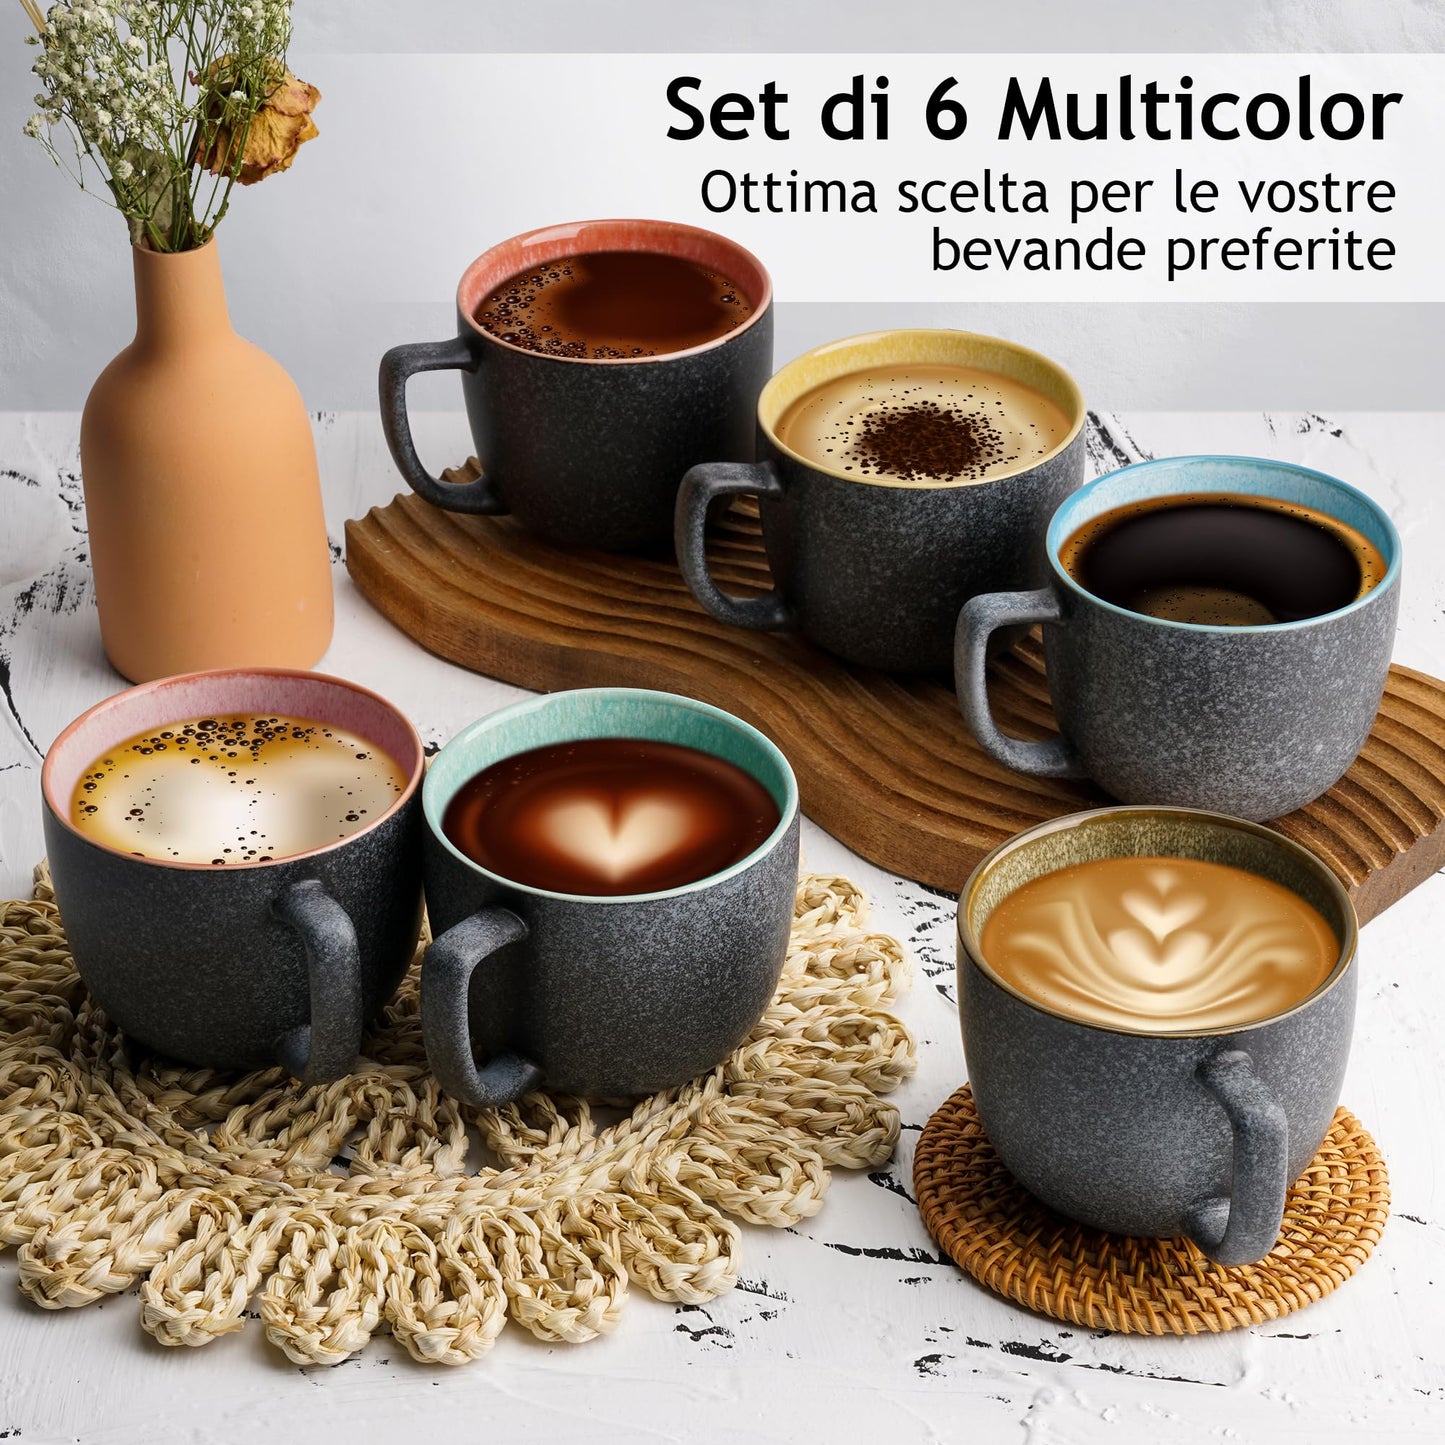 MIAMIO - 6 tazze da caffè da 470 ml/set di tazze/tazza da caffè grande/tazze da caffè moderne in gres - Collezione Las Palmitas Set di 6